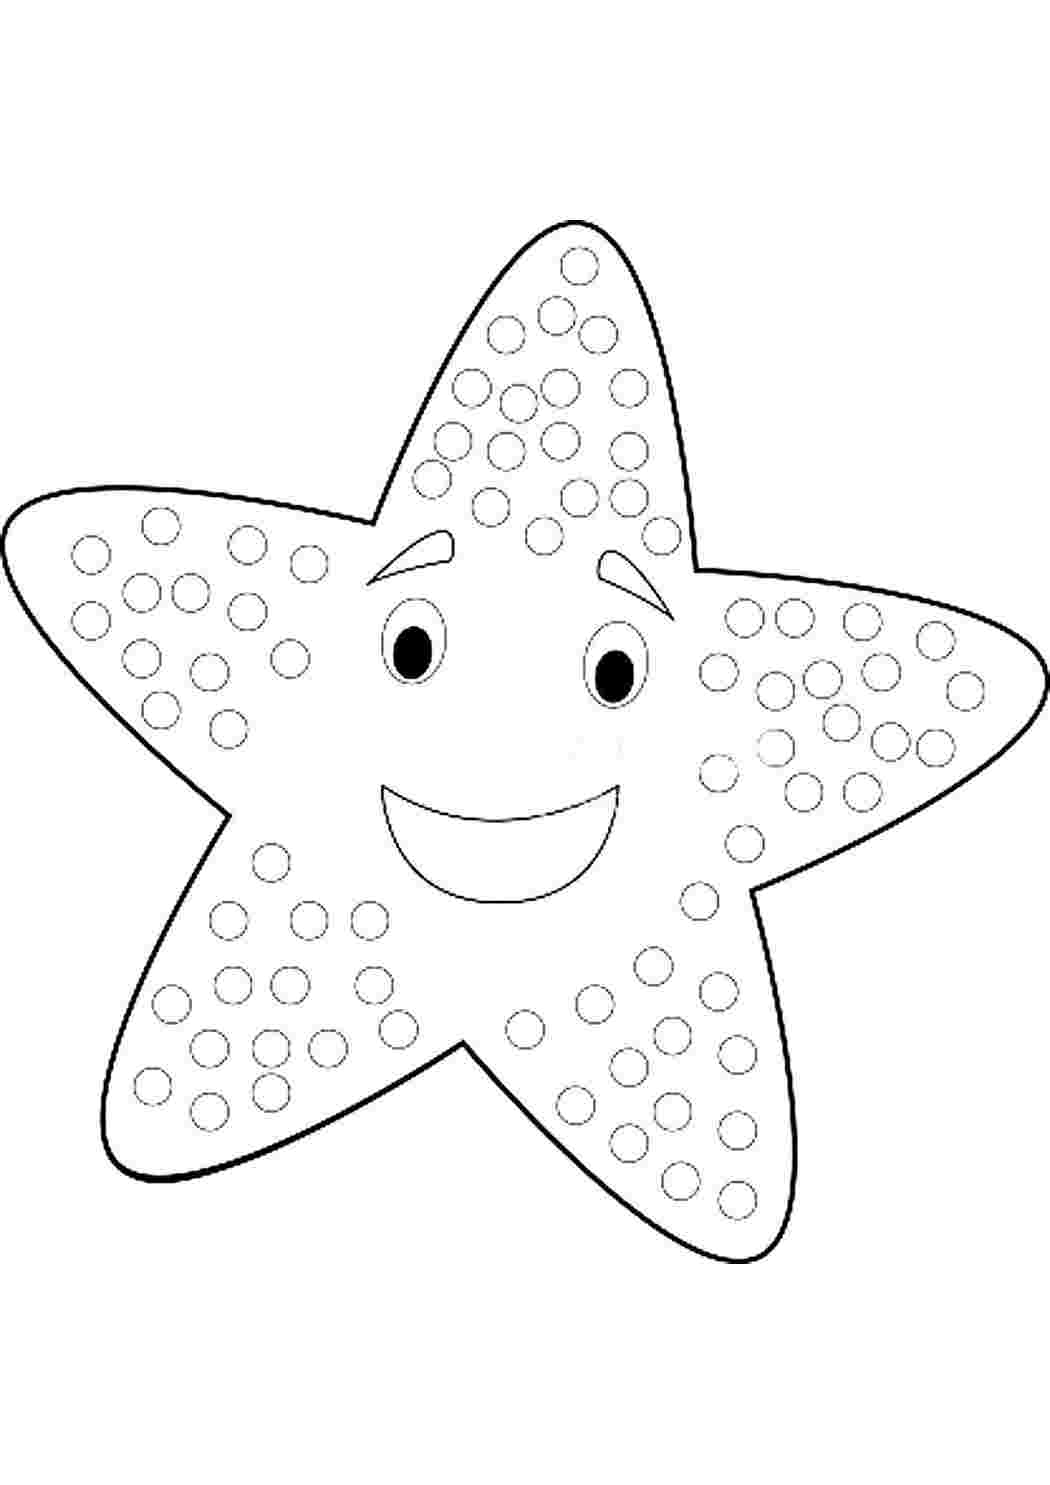 Раскраска морская звезда с лимонадом - скачать и распечатать в формате А4